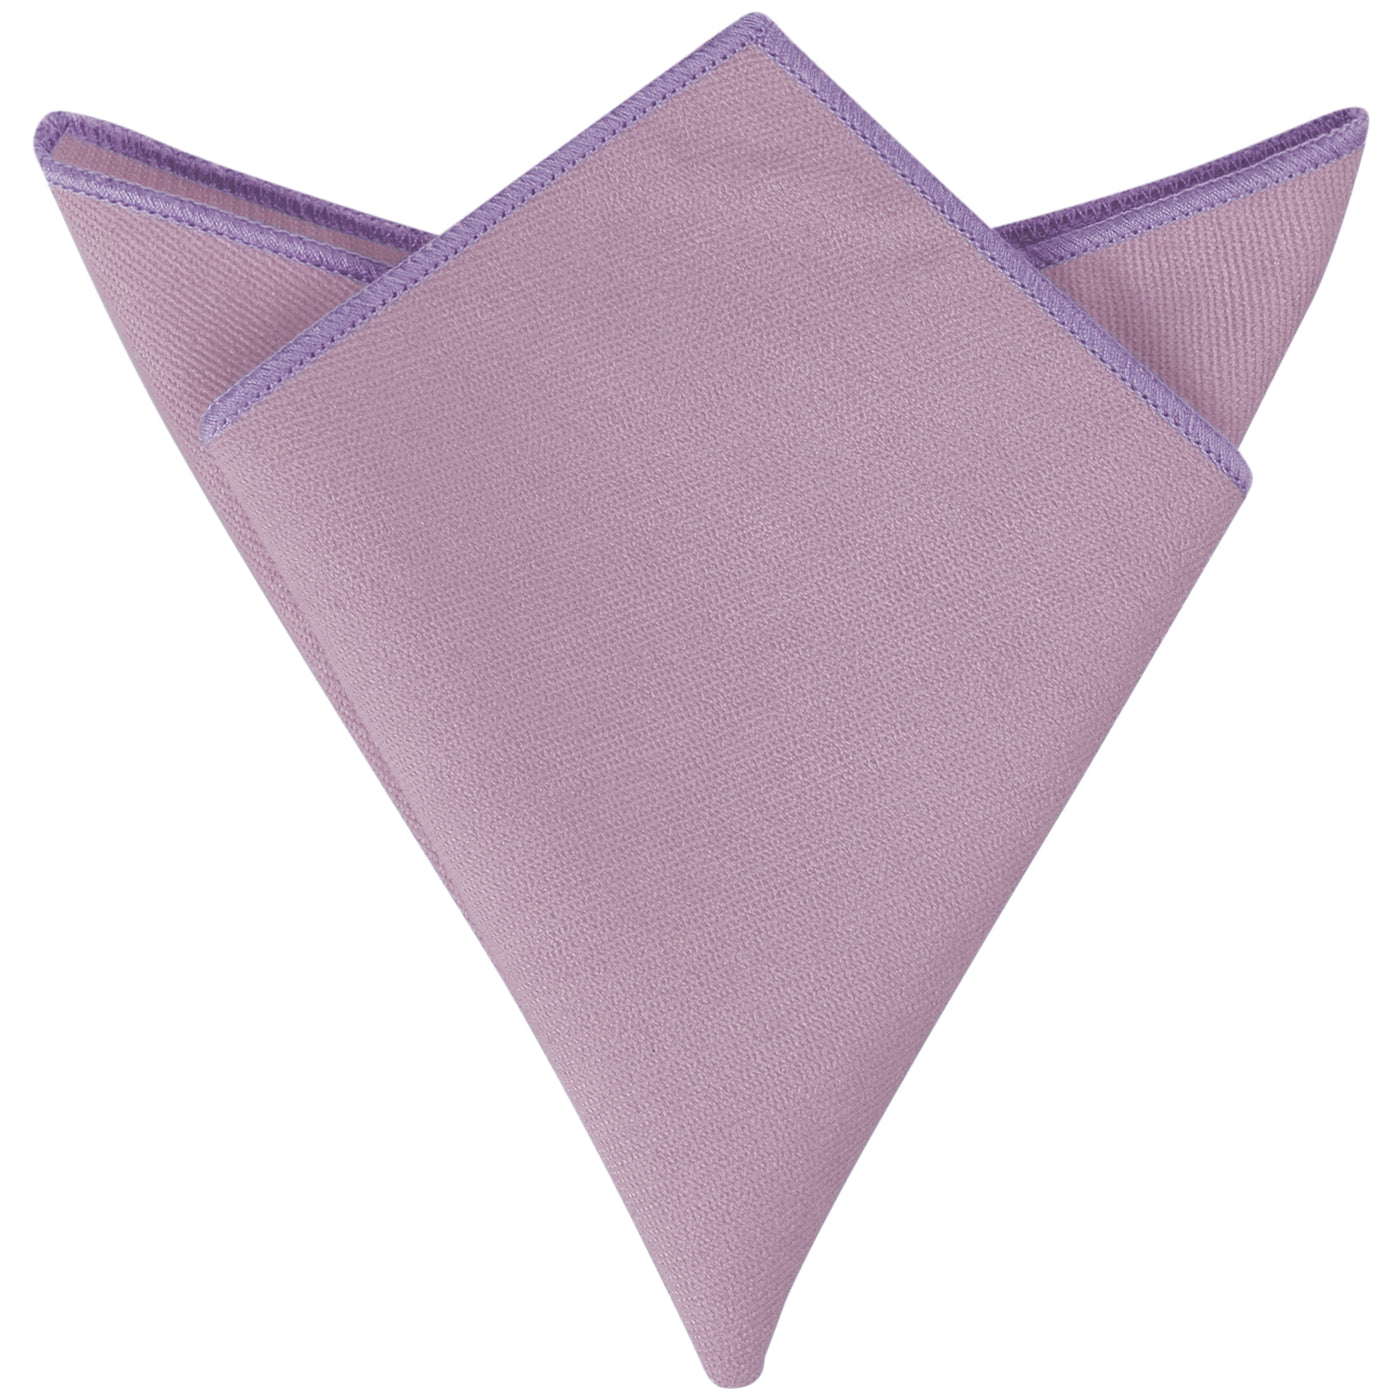 Bublédon Men's Cotton Handkerchiefs Classic Solid Color Pocket Squares for Formal Suit